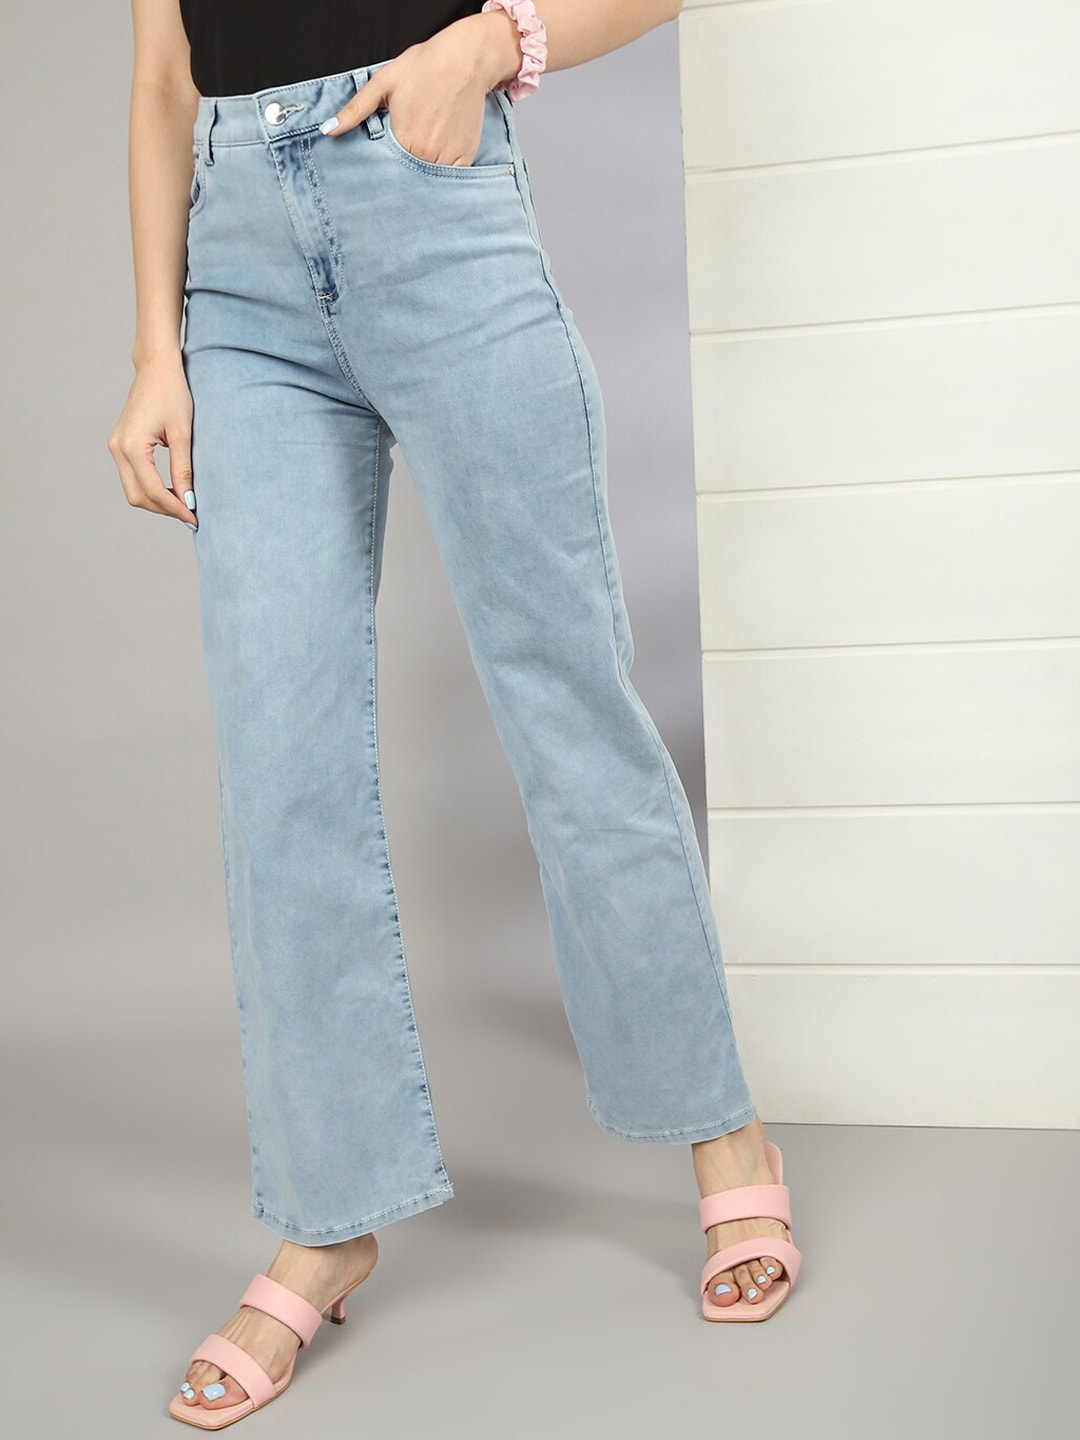 Shop Women Wide Leg Jeans With Tie N Dye Detail Online.